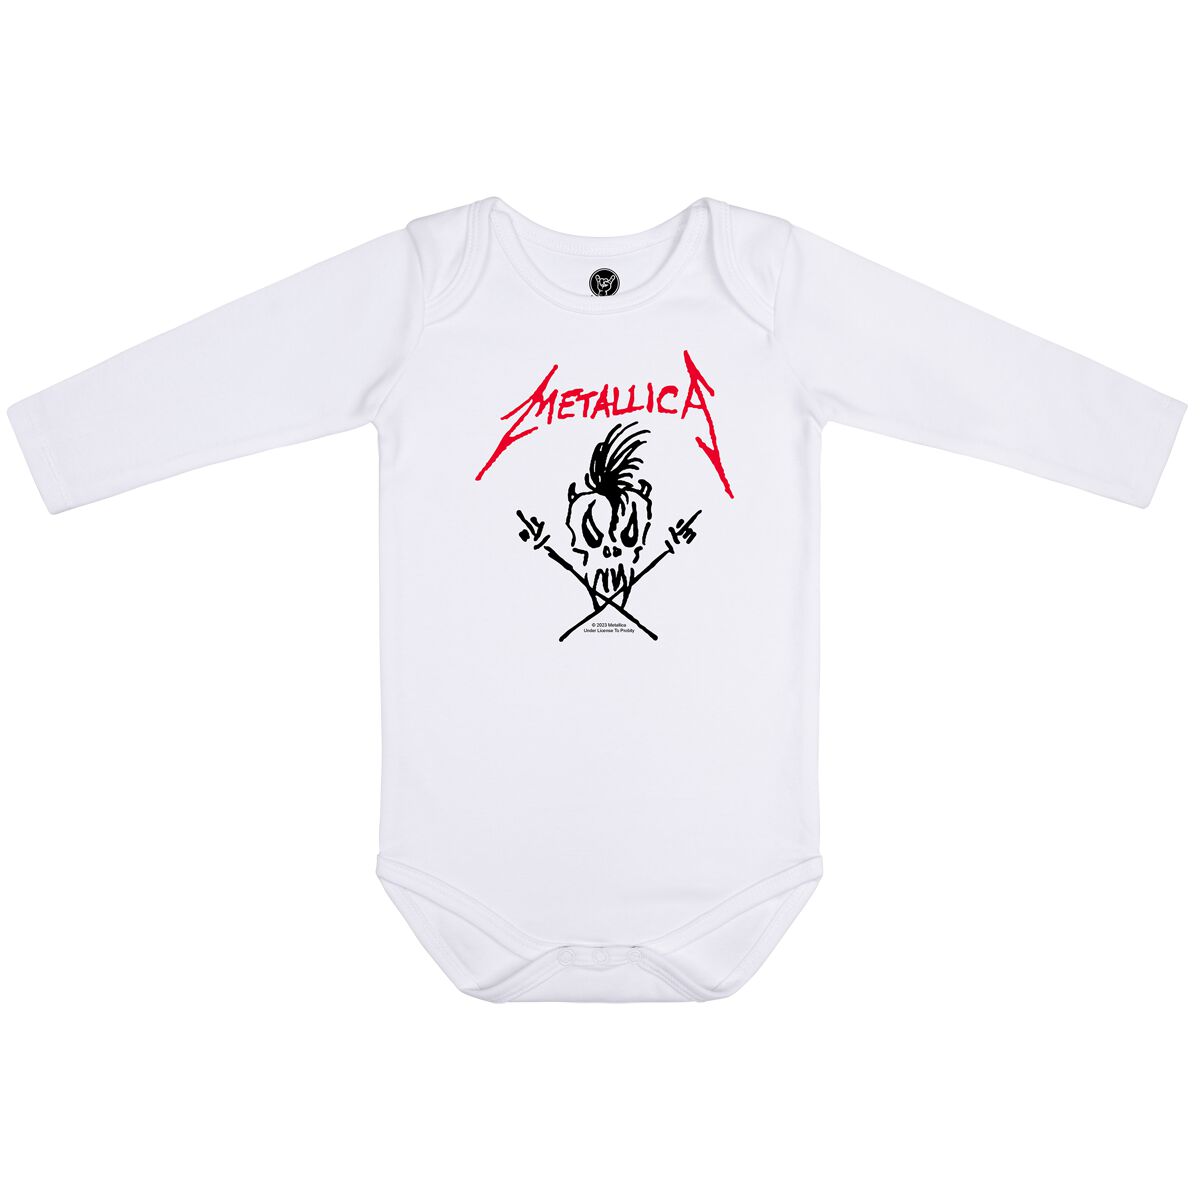 Metallica Body für Neugeborene - Scary Guy - für Mädchen & Jungen - weiß  - Lizenziertes Merchandise!